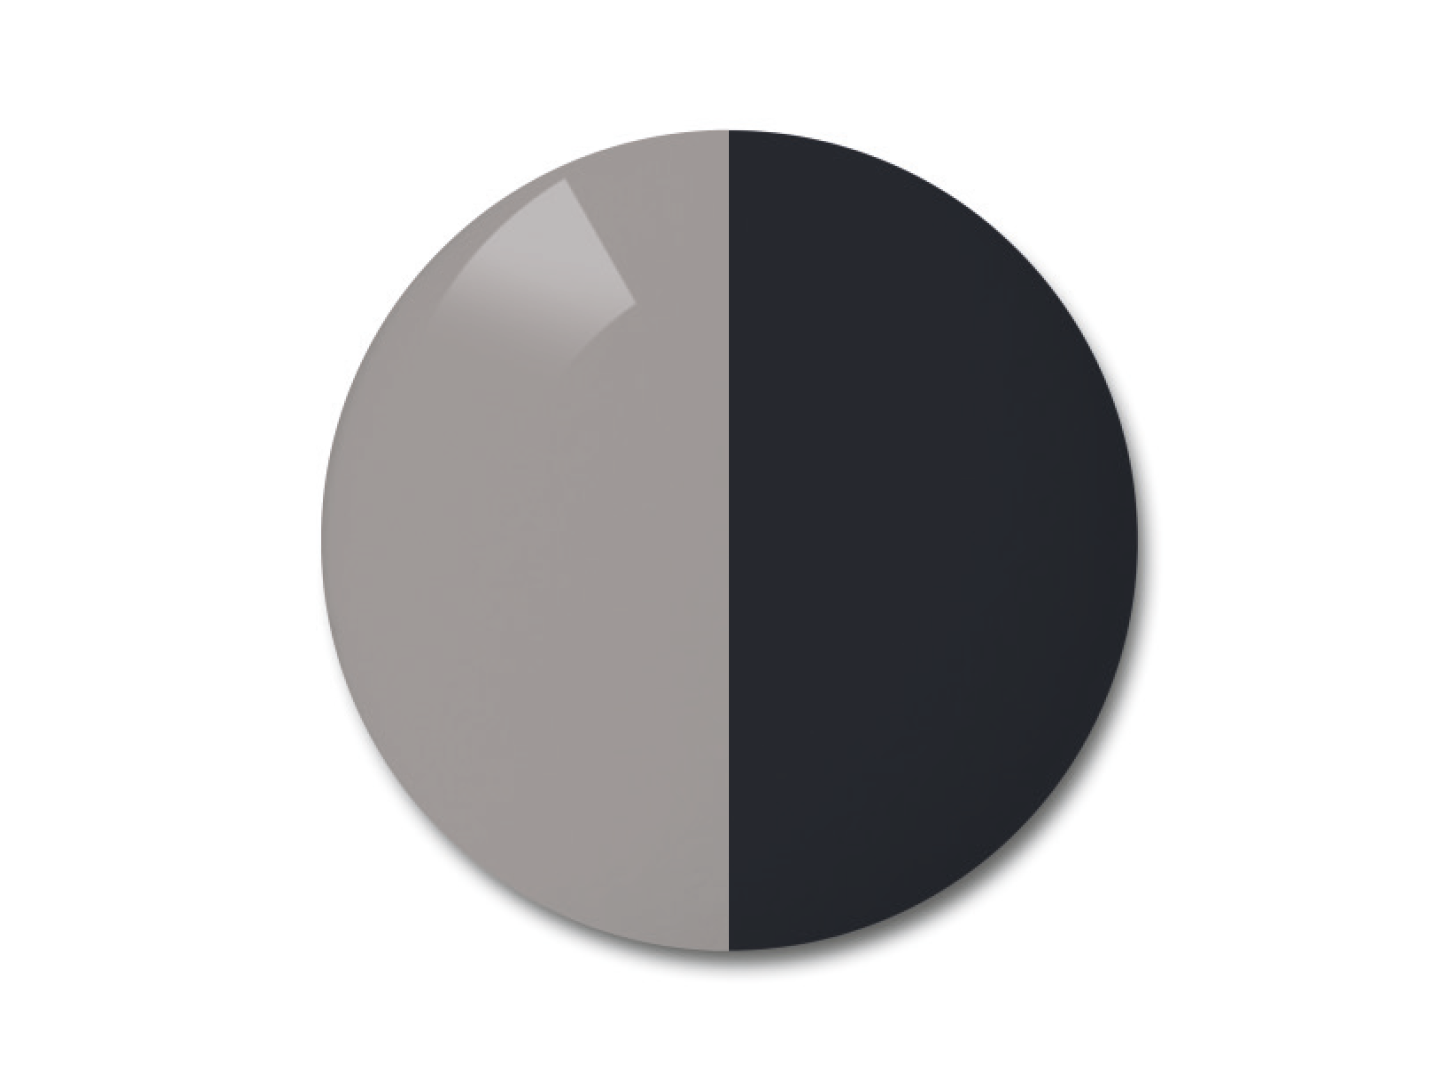 Ilustracja soczewki fotochromowej ZEISS AdaptiveSun w opcji kolorystycznej grey